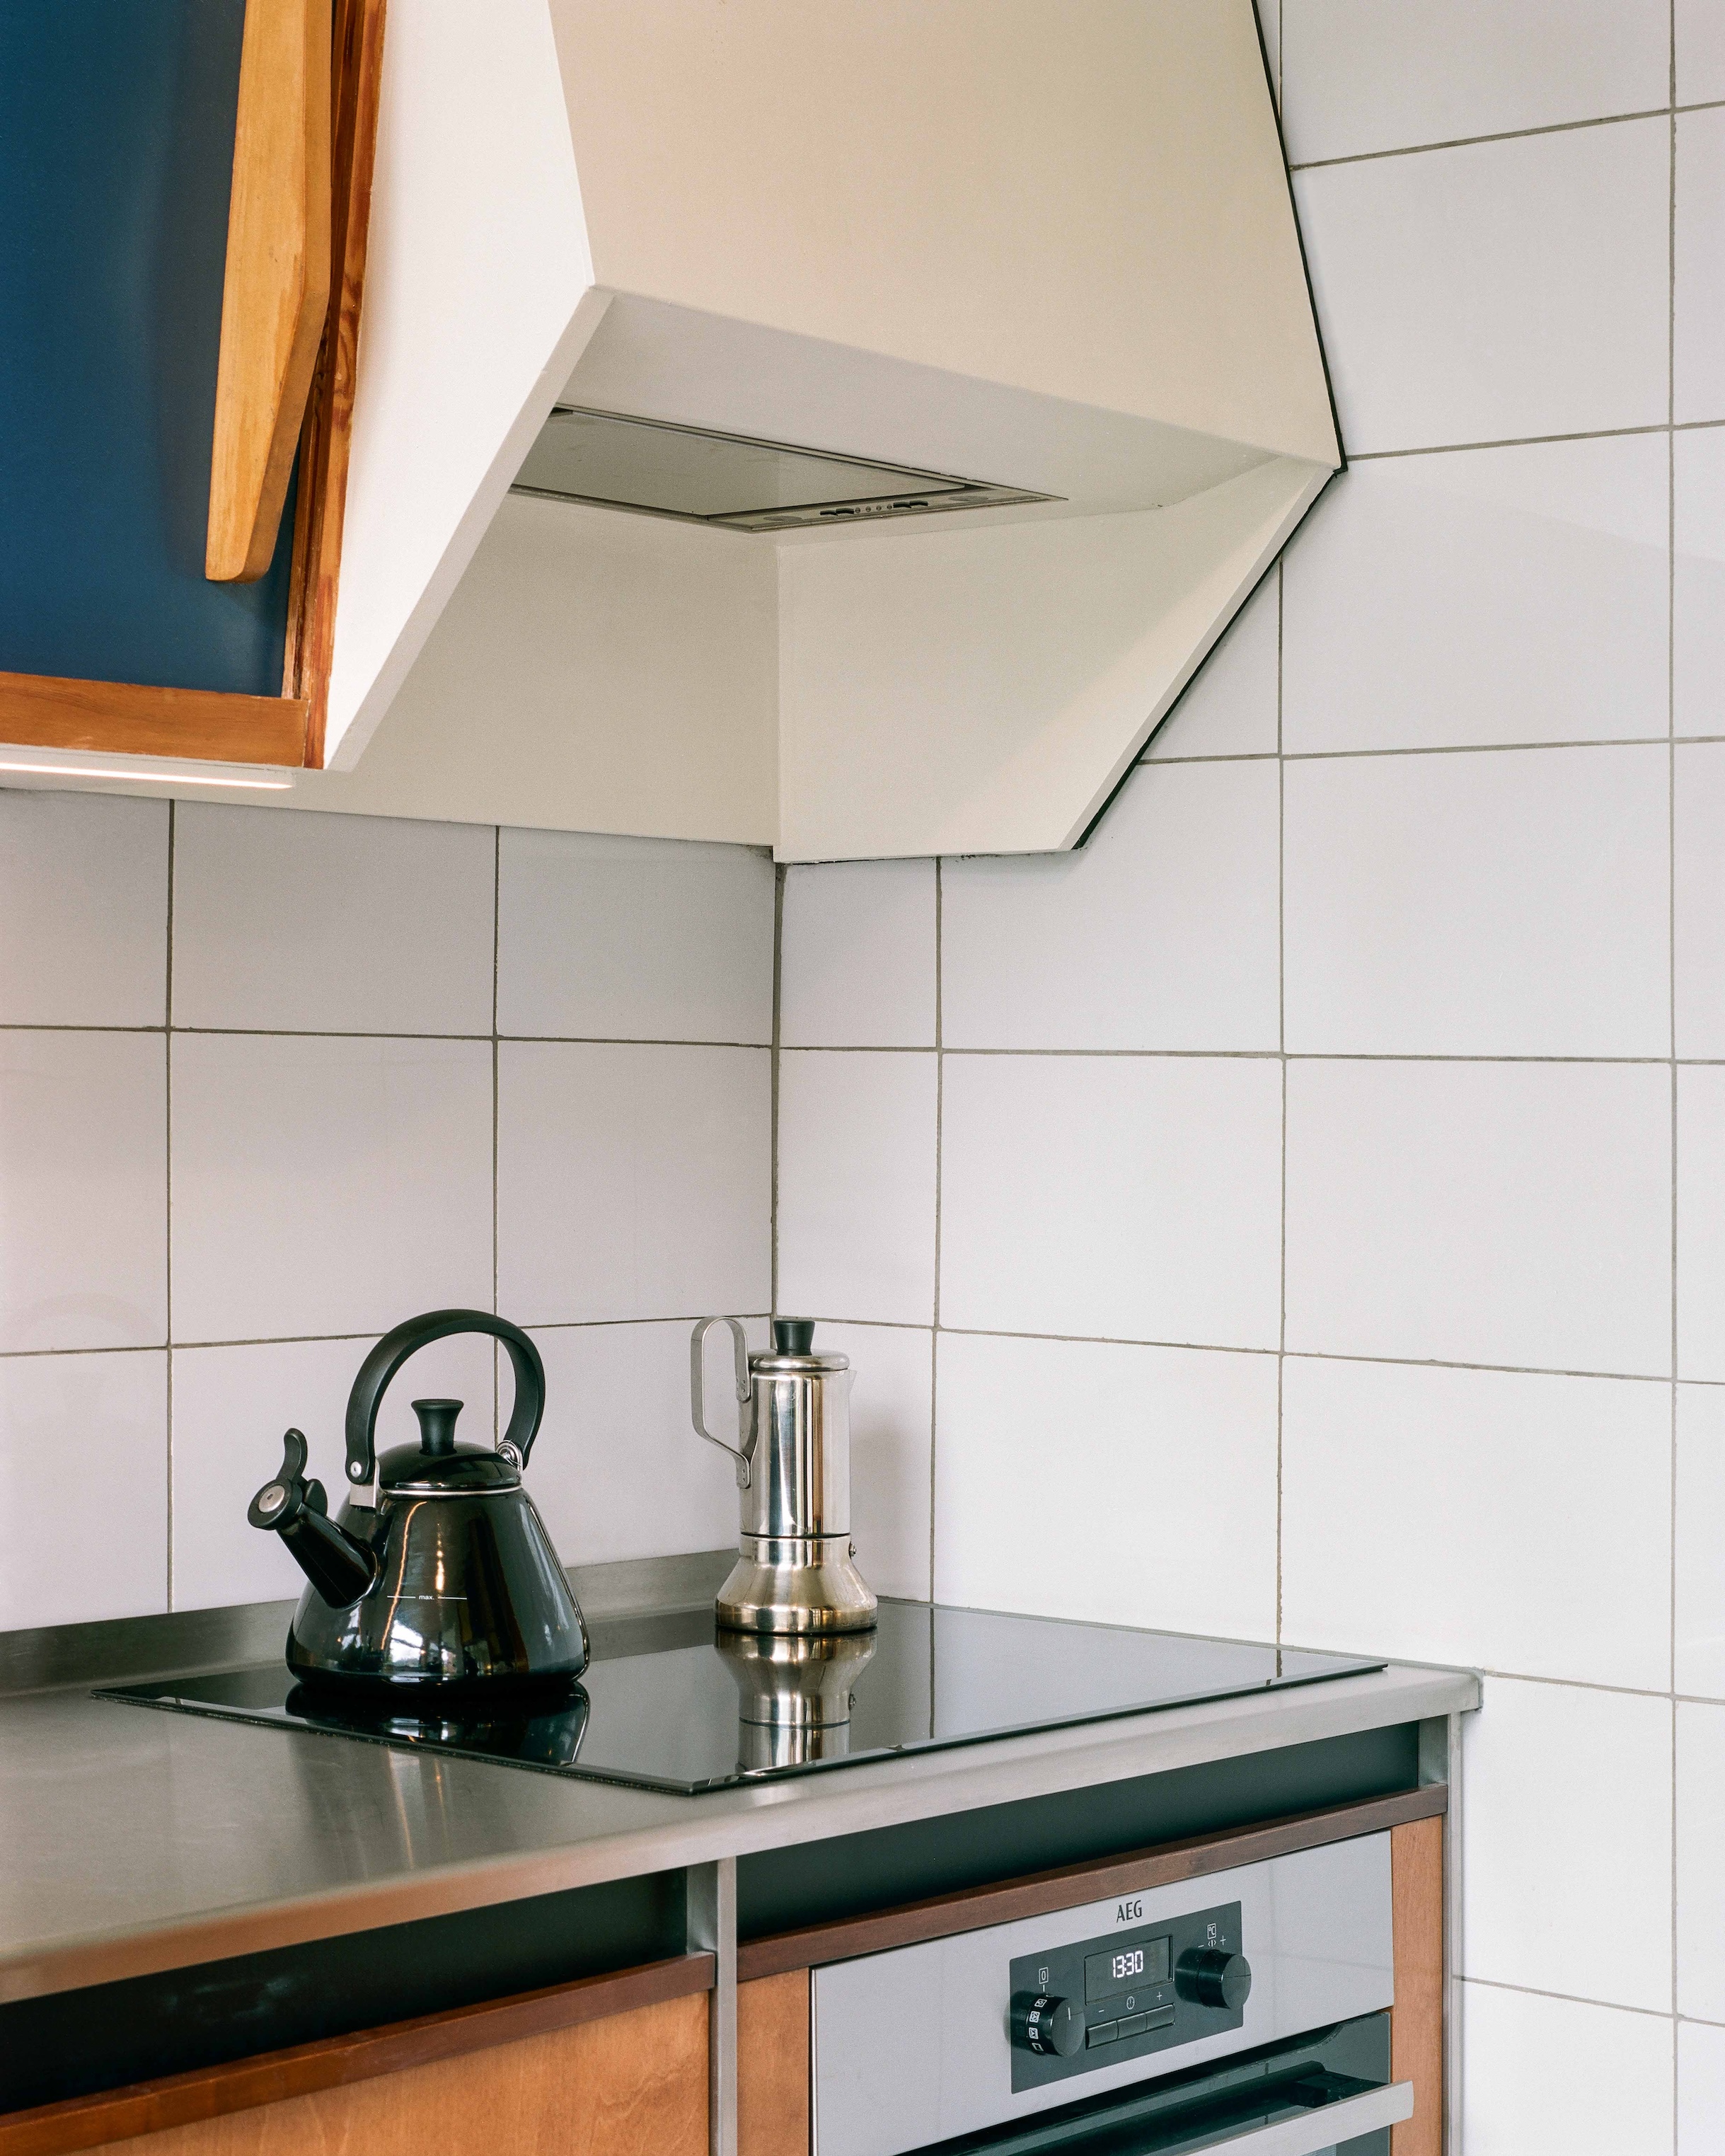 willy van der meeren 1960s kitchen in belgium updated by atelier avondzon. 275